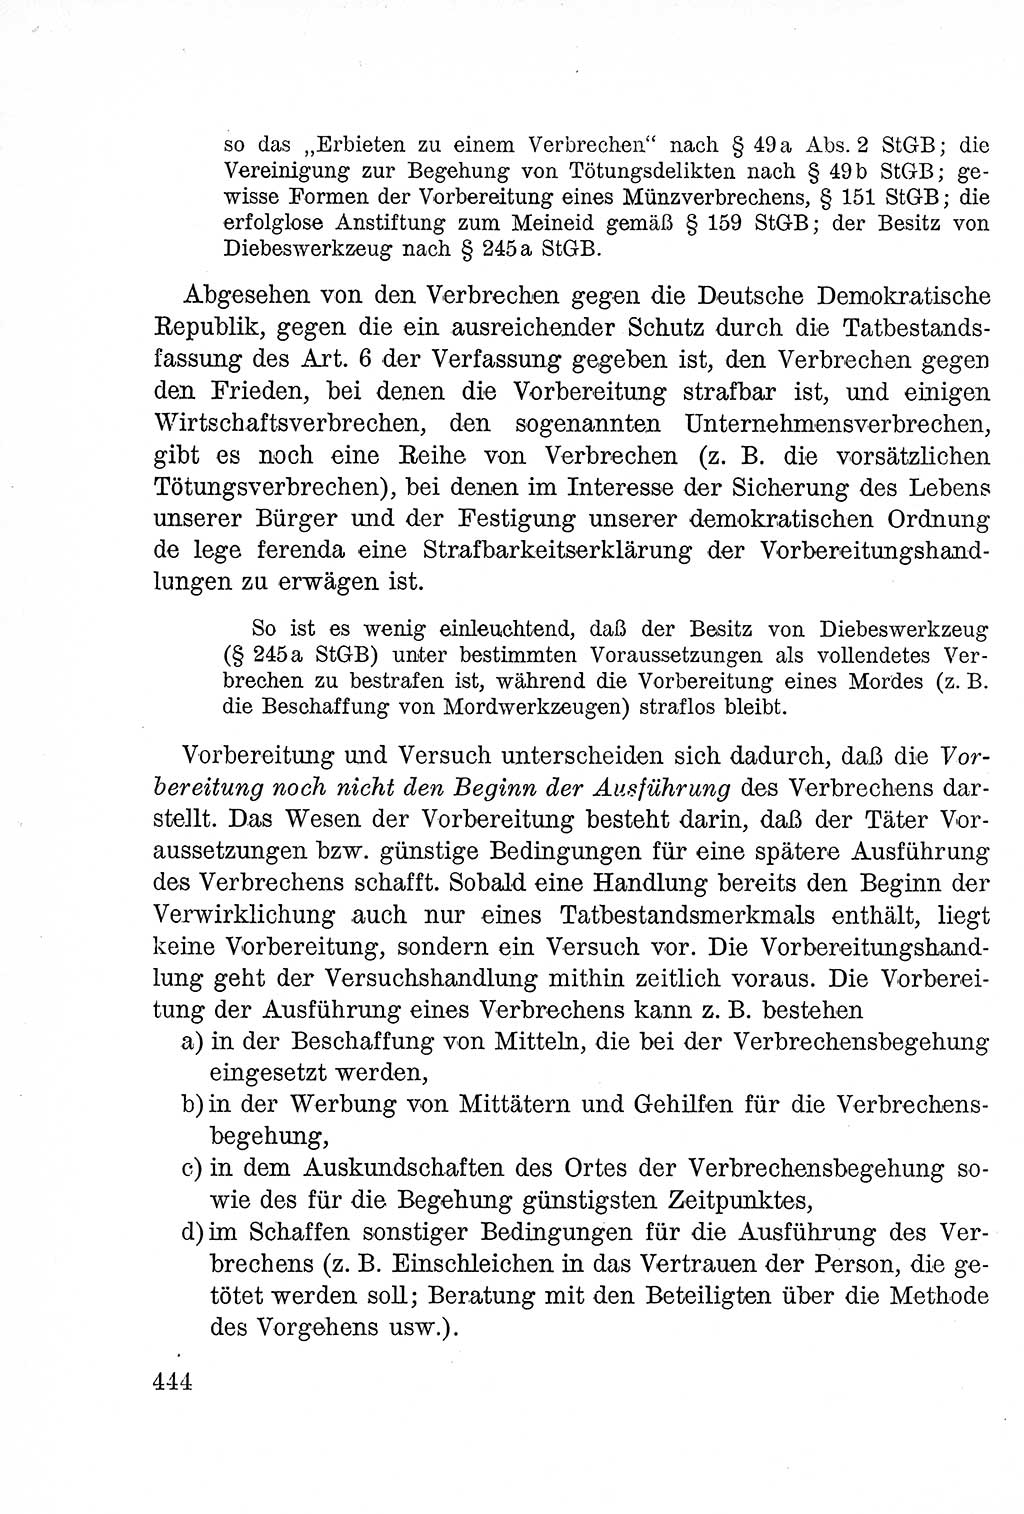 Lehrbuch des Strafrechts der Deutschen Demokratischen Republik (DDR), Allgemeiner Teil 1957, Seite 444 (Lb. Strafr. DDR AT 1957, S. 444)